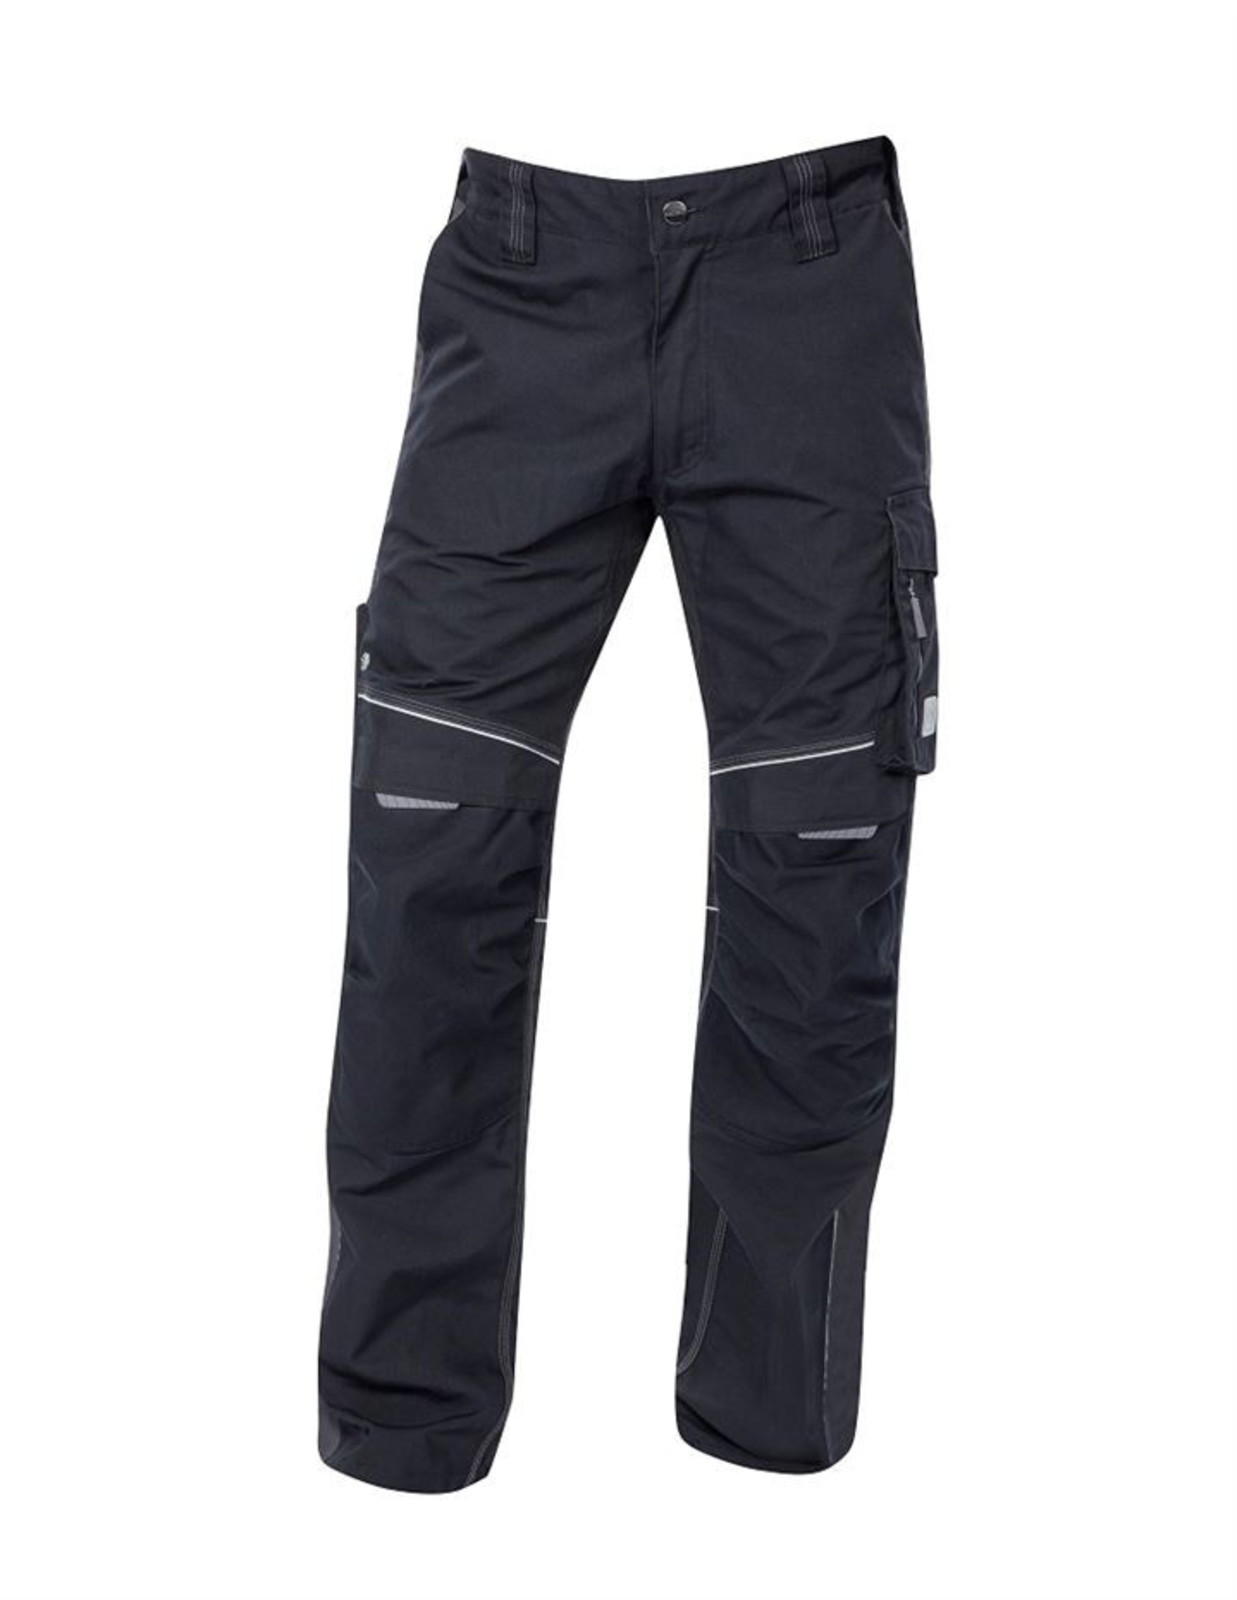 Pánske montérkové nohavice Ardon Urban+ - veľkosť: 46, farba: čierna/sivá